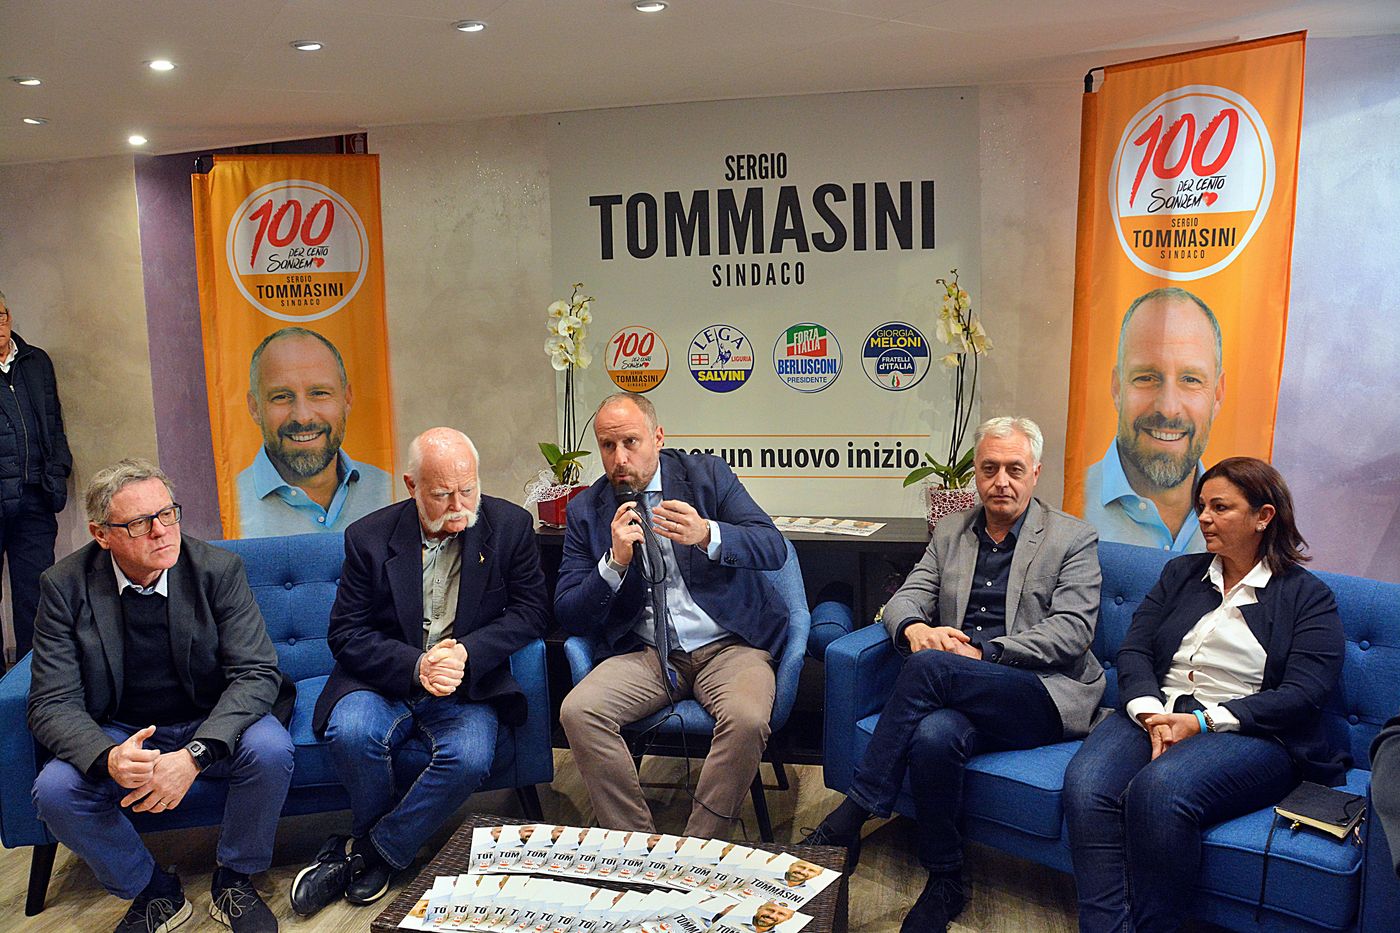 Sergio Tommasini candidato sindaco Sanremo Gruppo dei 100 gennaio 2019_10